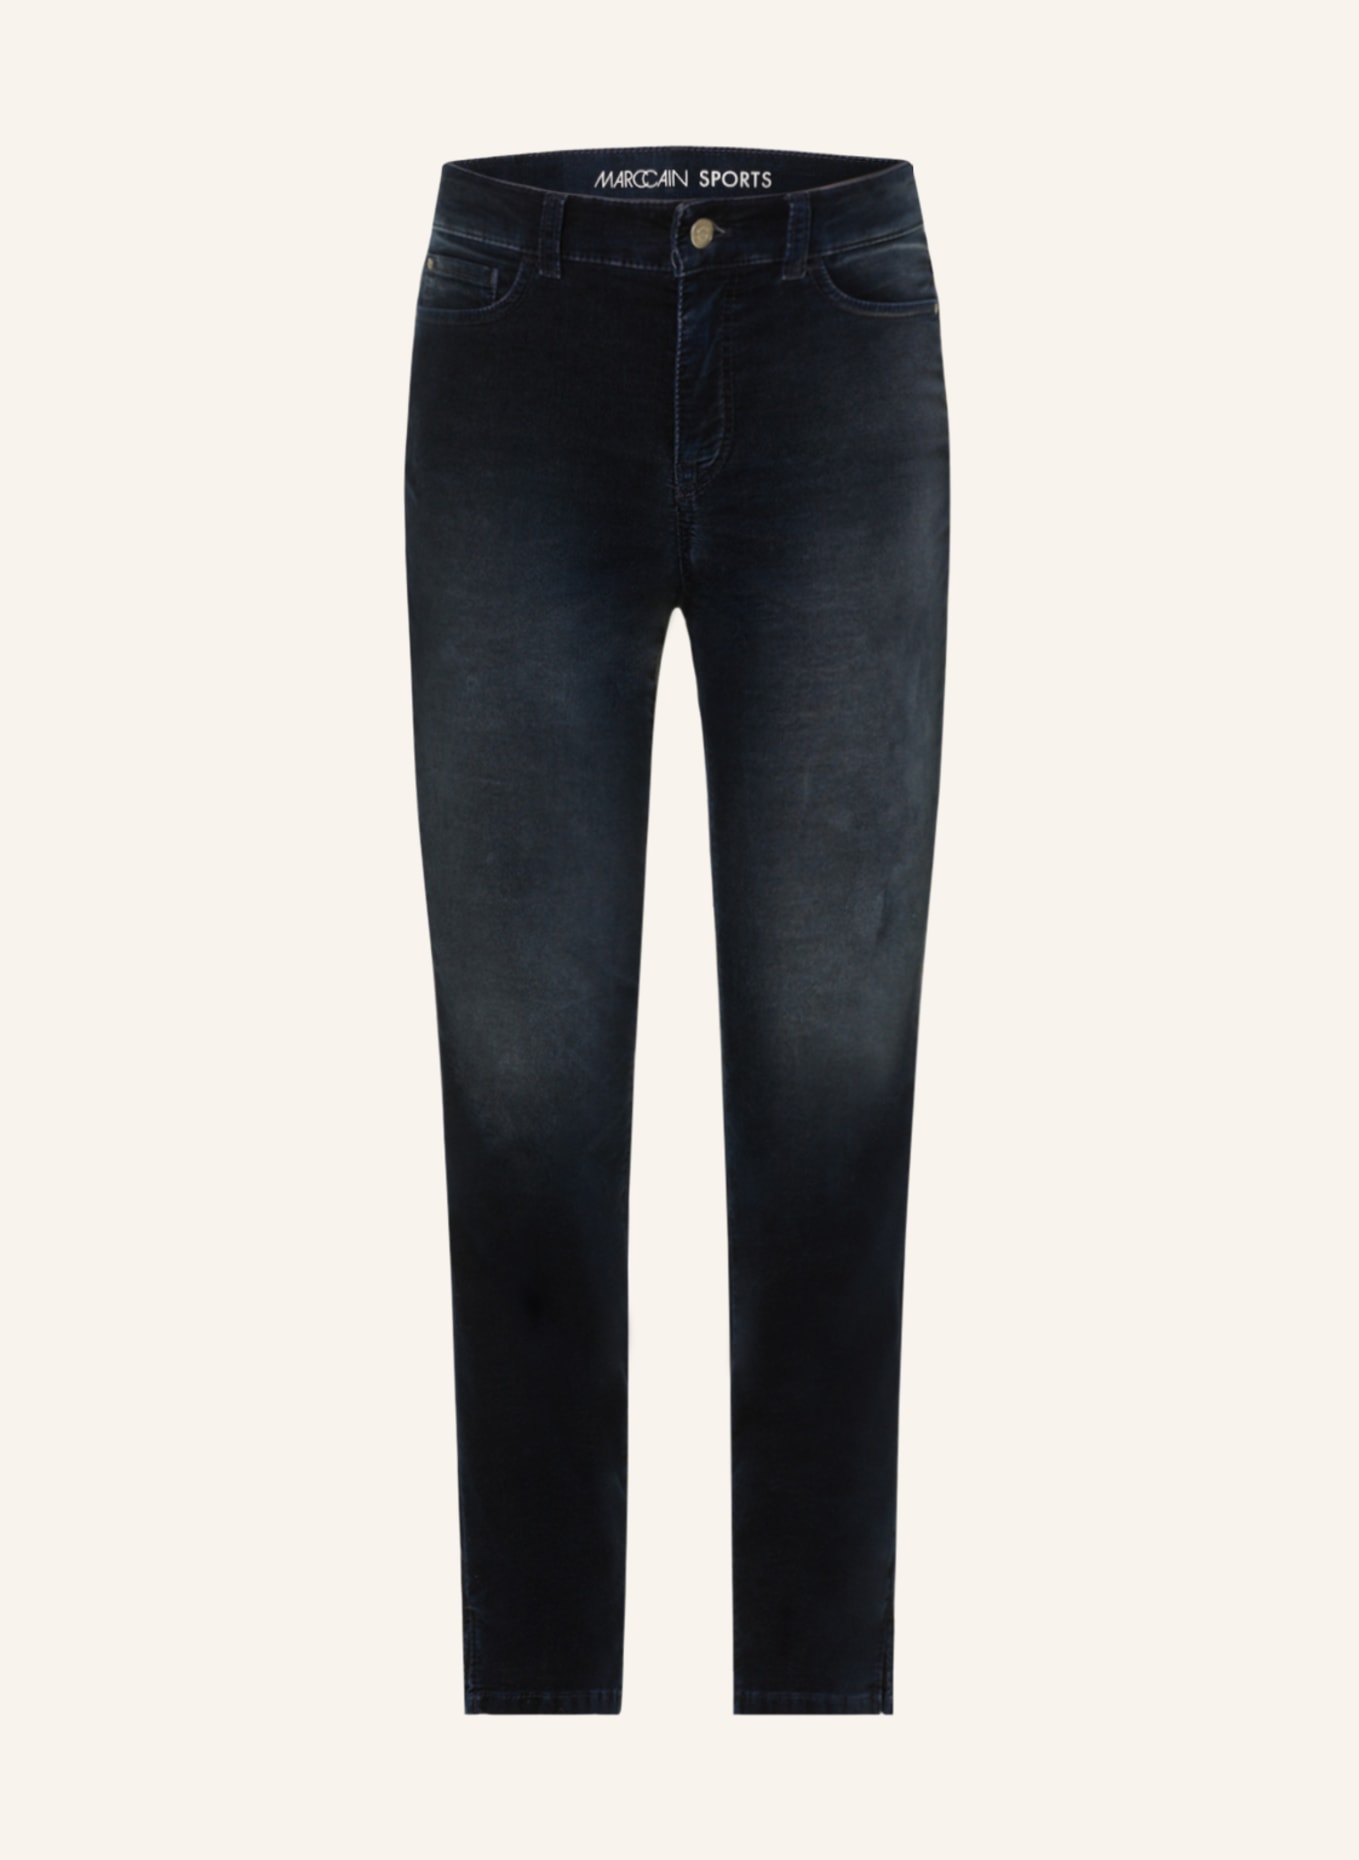 Guess Jeans Women's Velvet Black Straight Leg Pants Size 29” | Women jeans,  Guess jeans, Straight leg pants